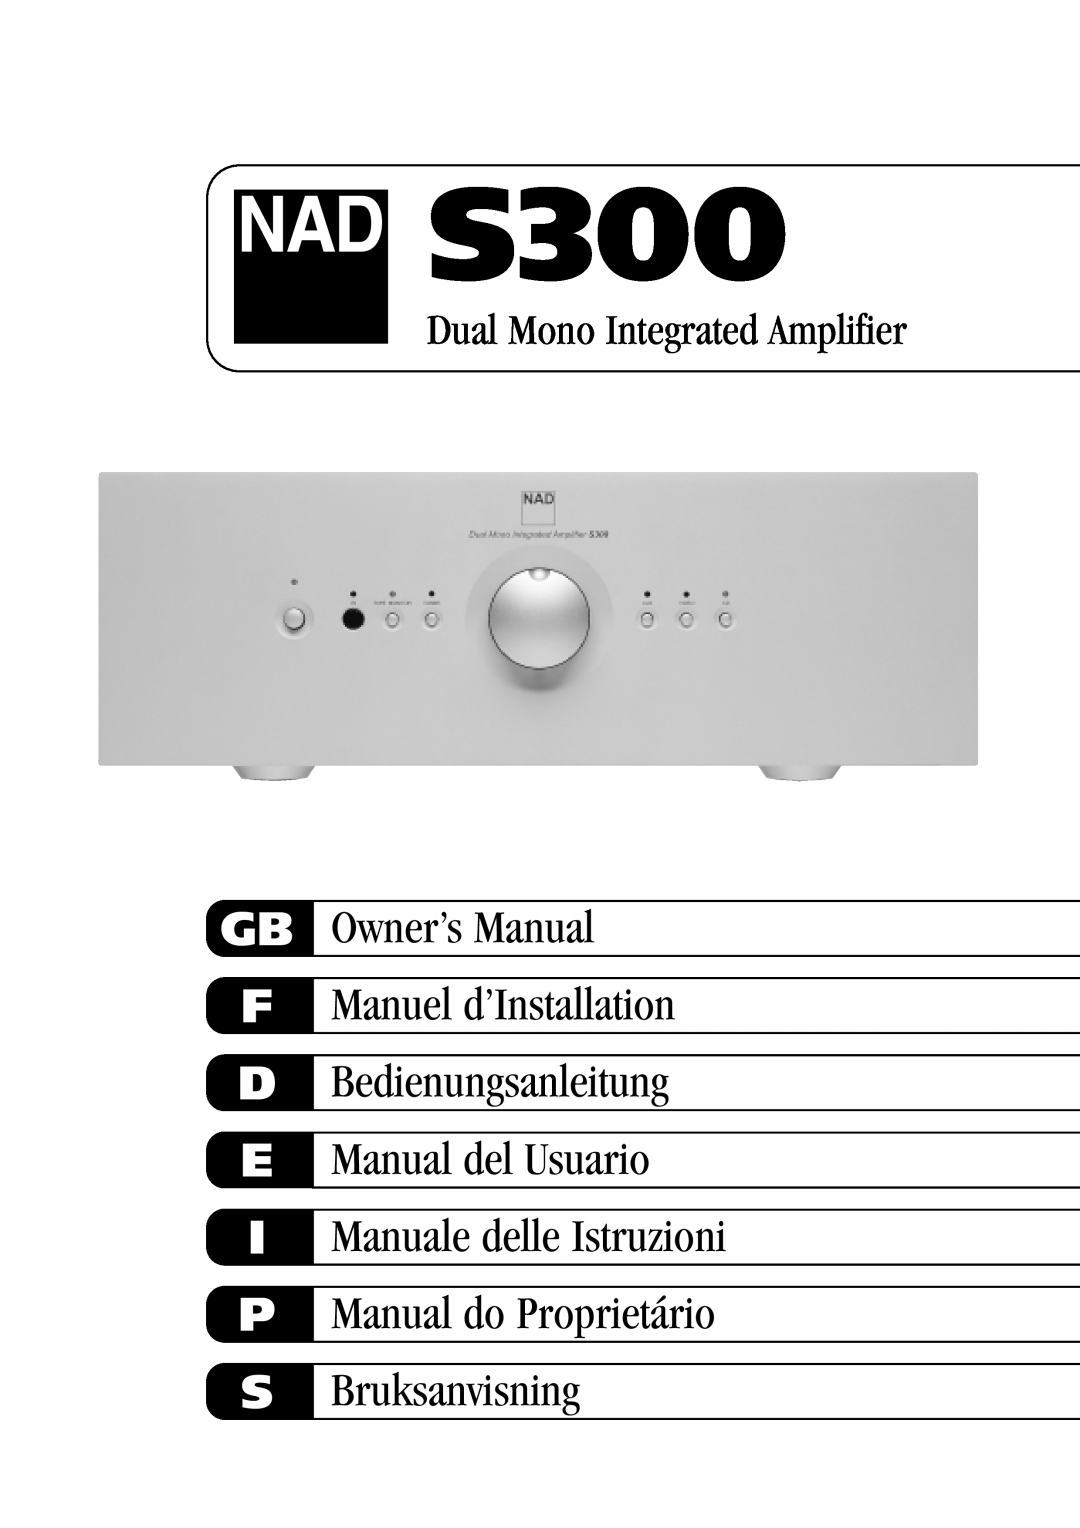 NAD S300 owner manual Gb F D E I P S, Bedienungsanleitung Manual del Usuario, Bruksanvisning 